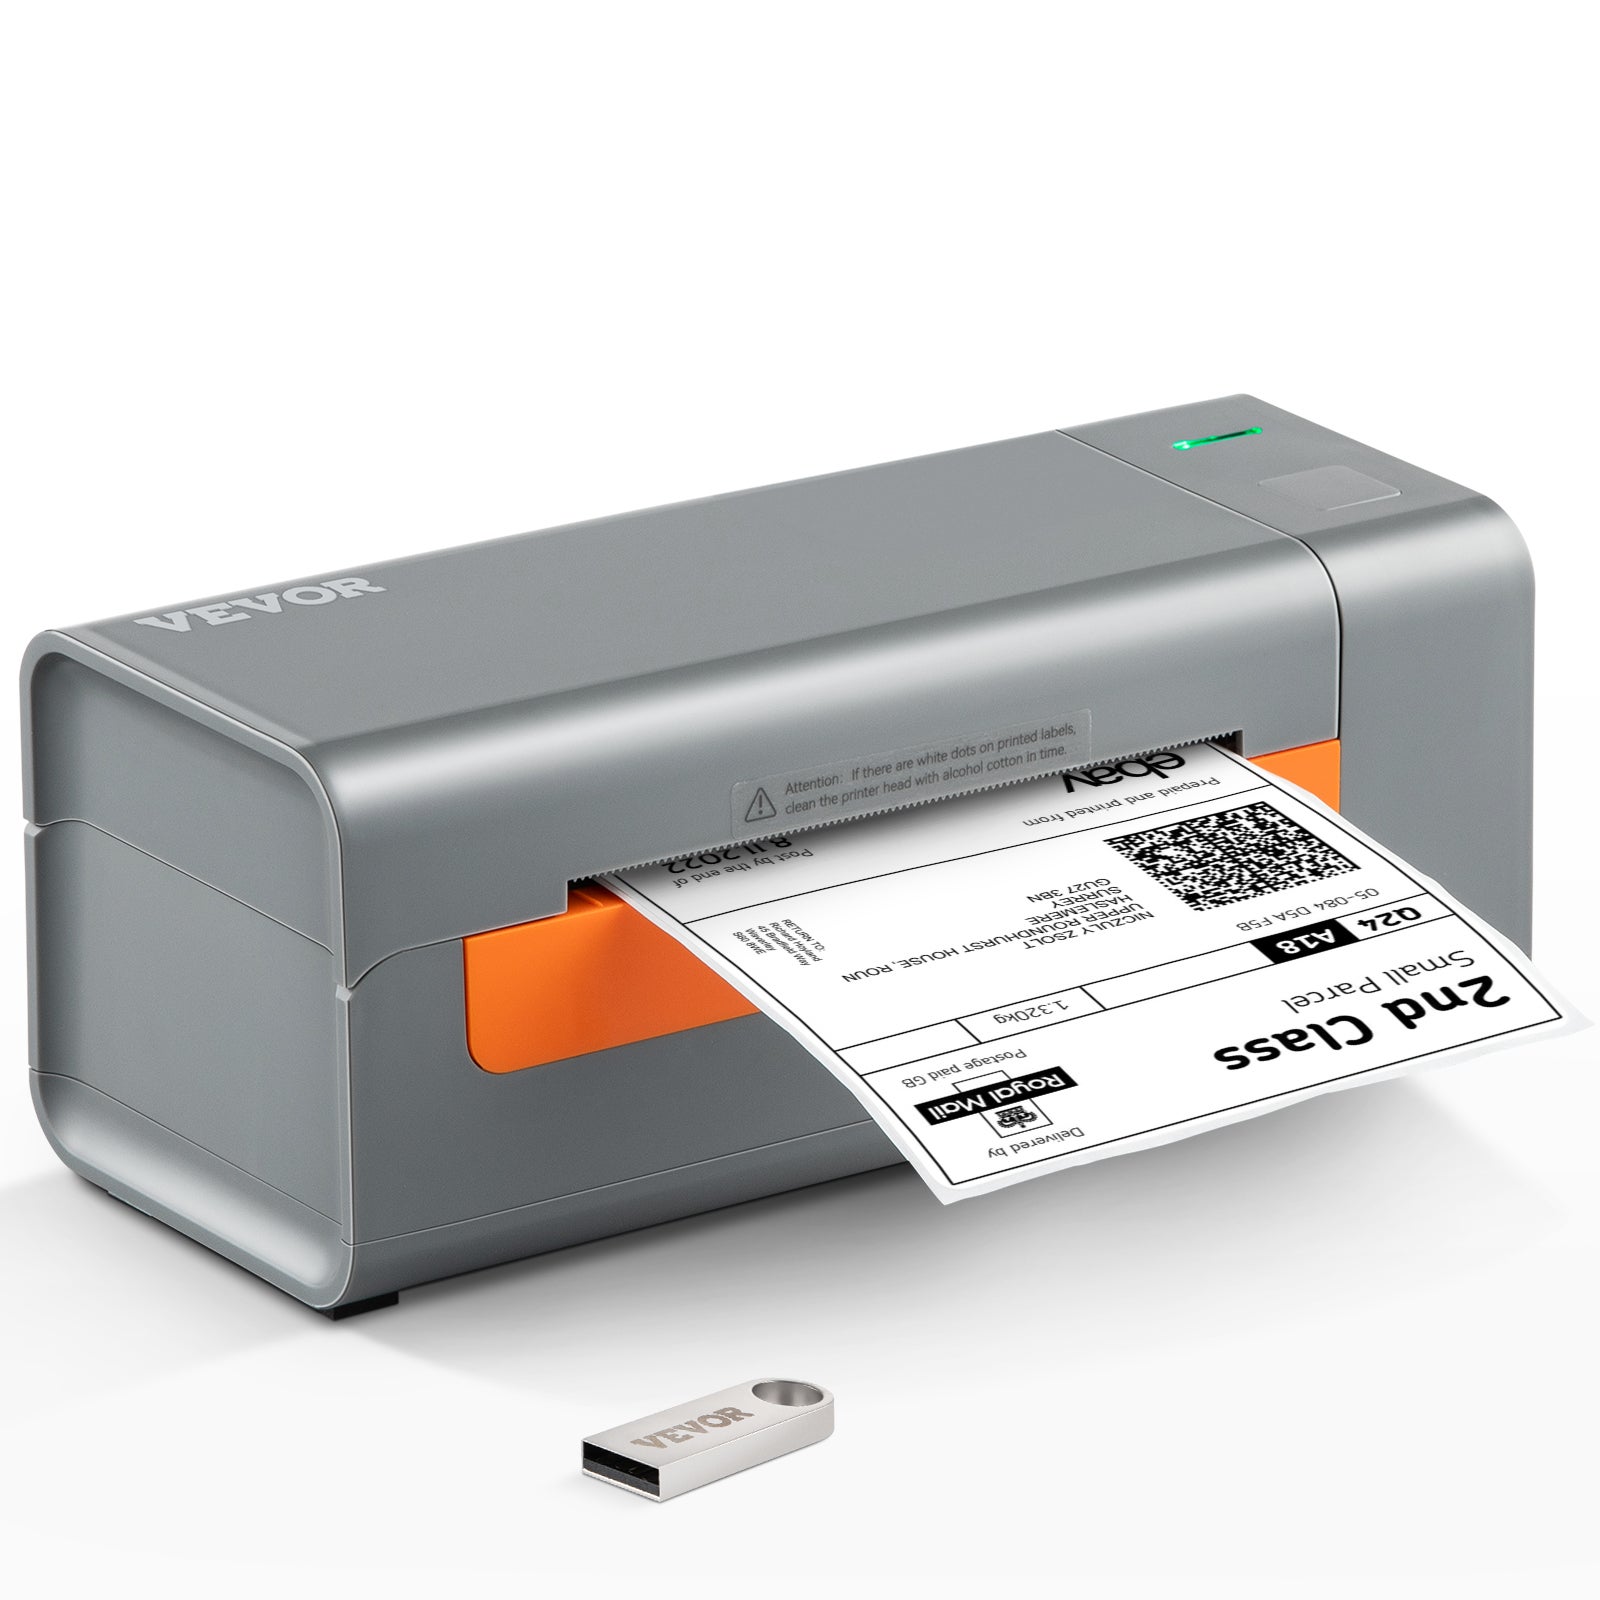 Une imprimante à étiquettes compatible Mac et iOS – Le journal du lapin